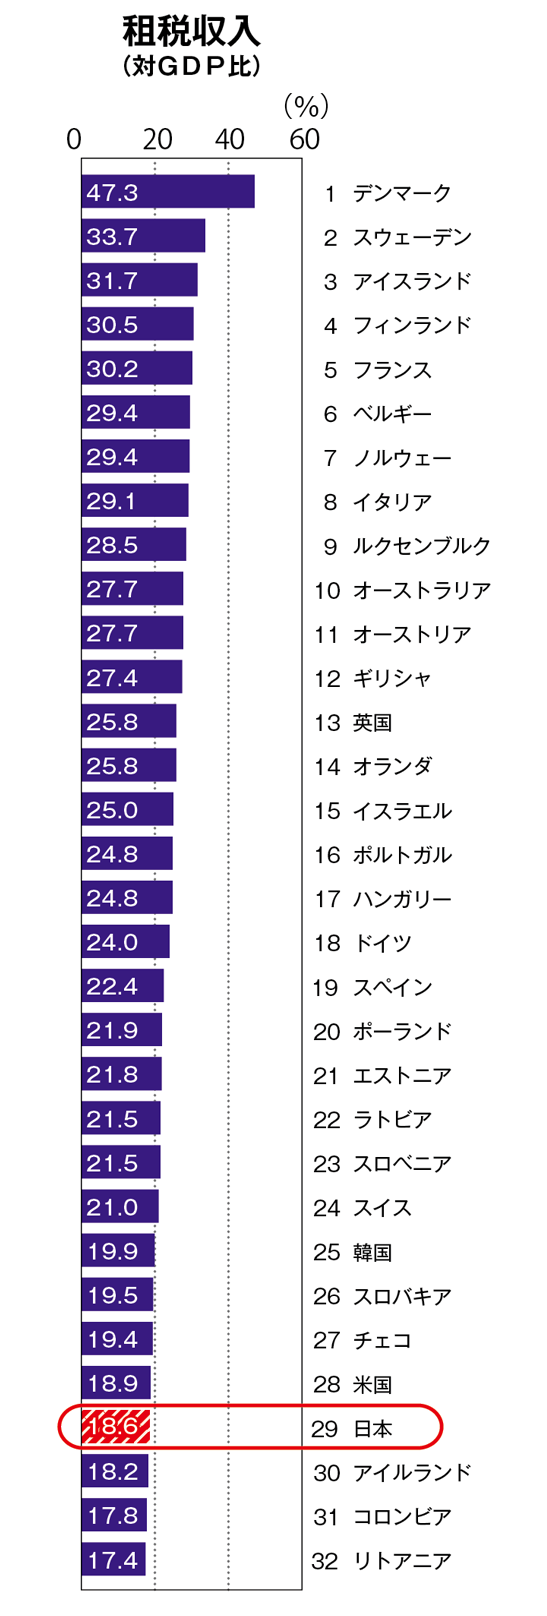 図・租税収入（対GDP比）比較表。32カ国中、日本は29番目で18.6%である。